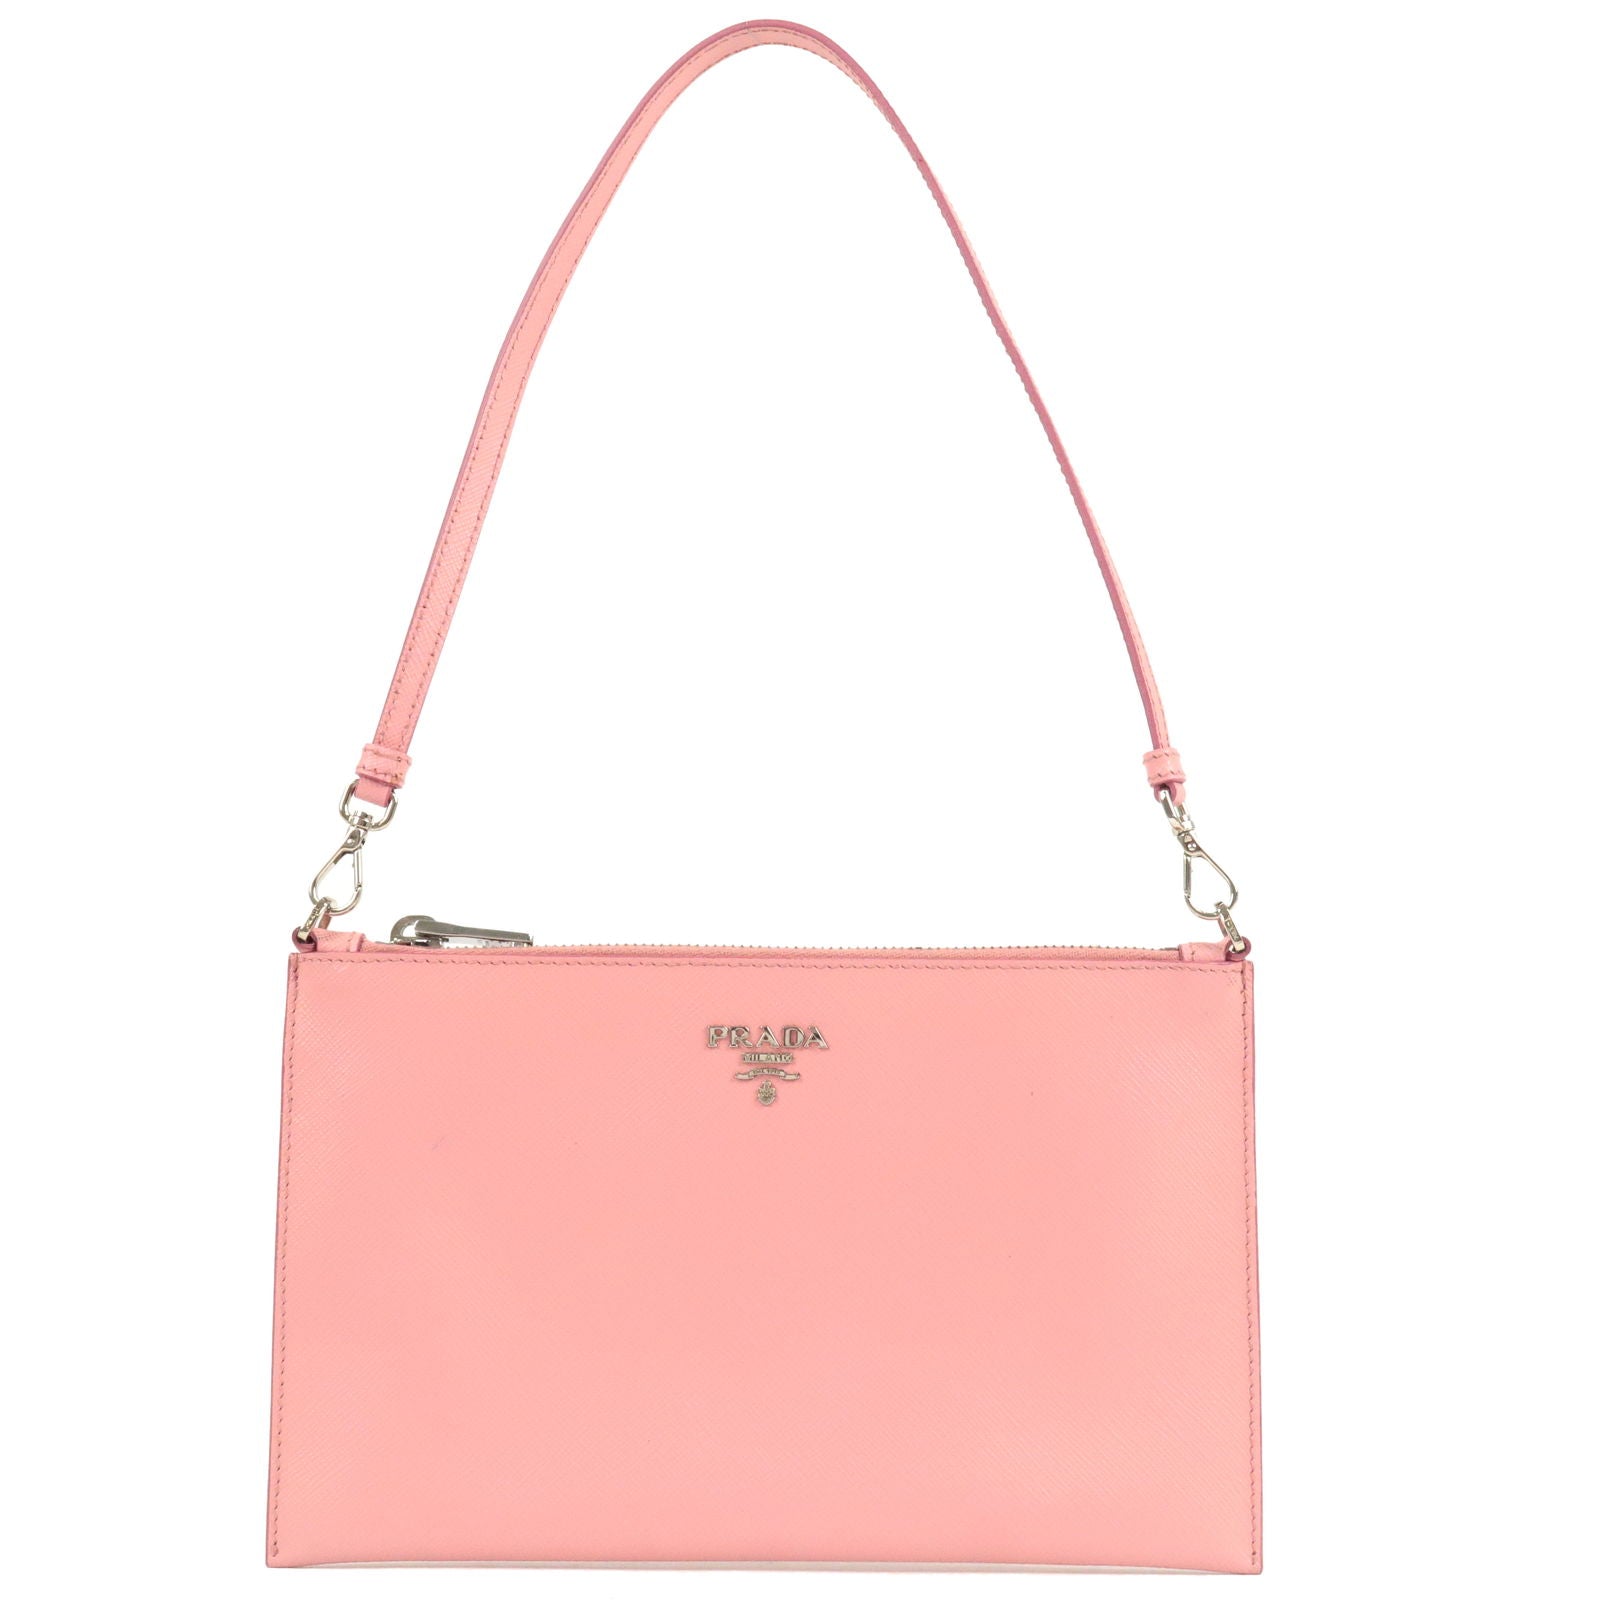 Leather - Pink - Bag - 1NH004 – prada prada pocket shoulder bag item -  Pouch - PETARO - Shoulder - Prada Matinee small handbag Black - Logo - PRADA